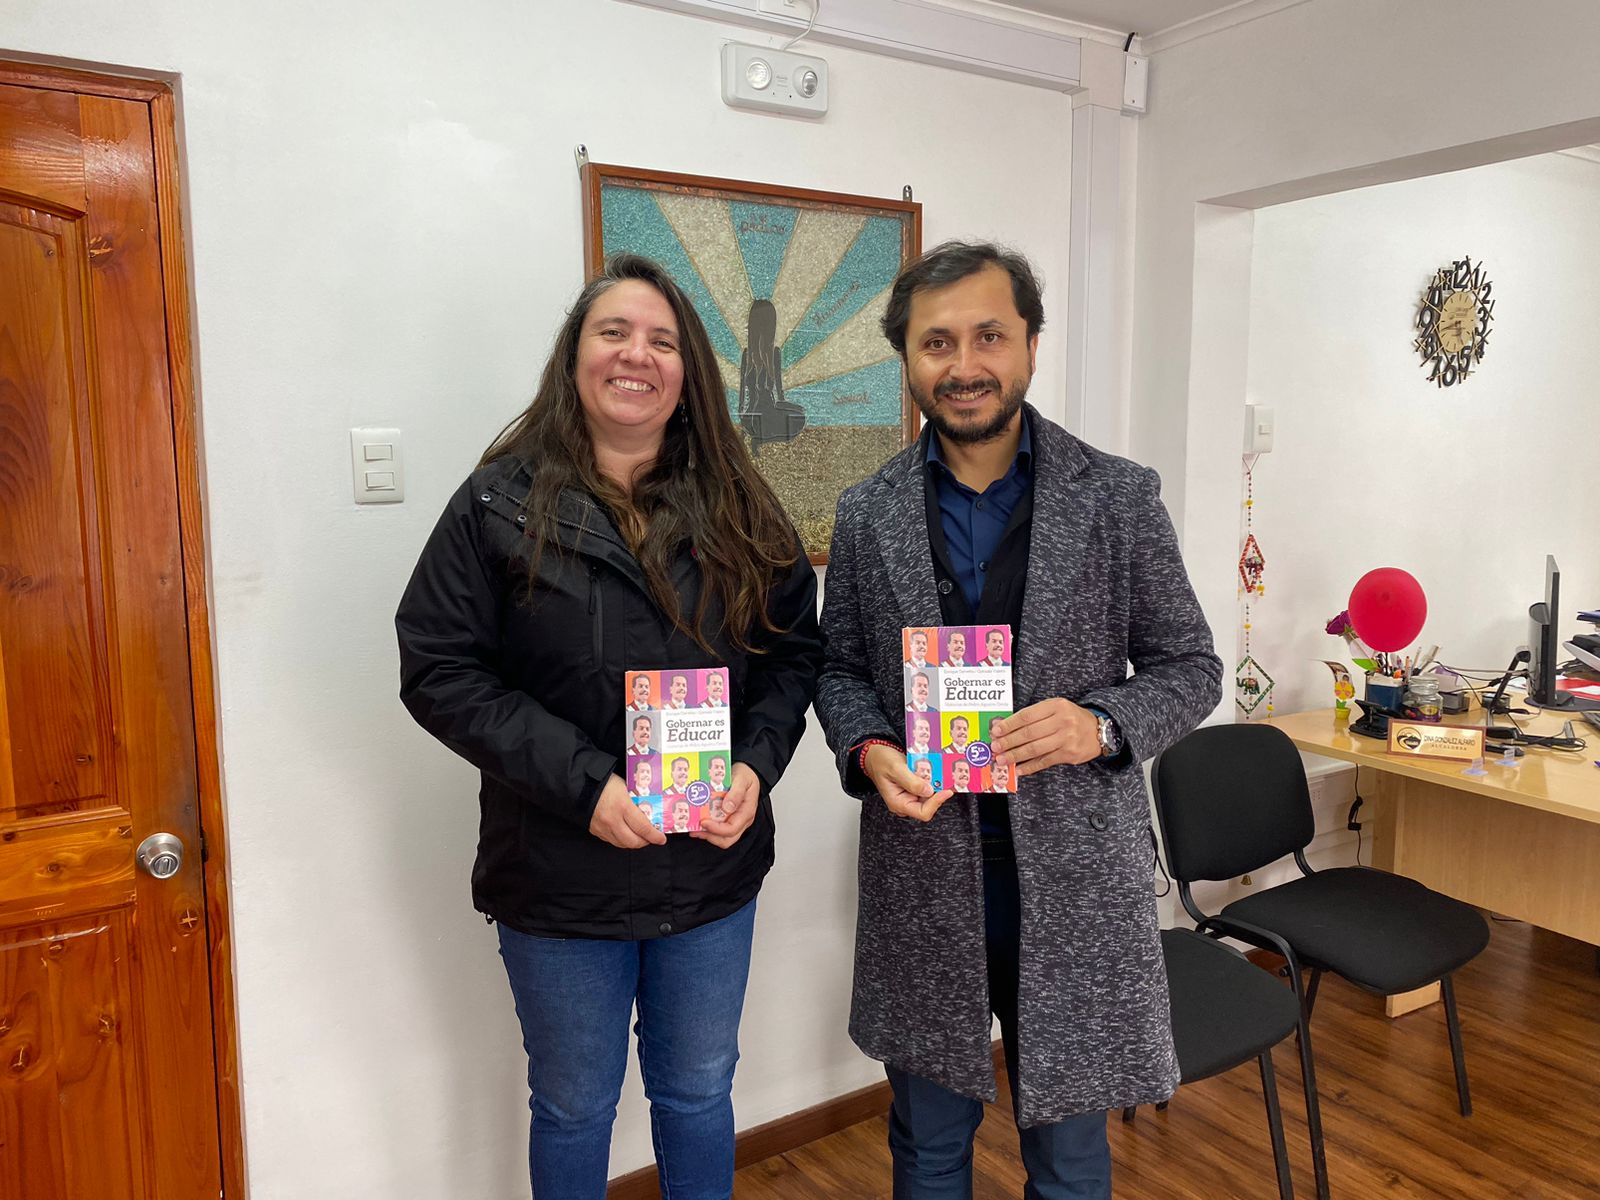 CALLE LARGA: Presentan la quinta edición de “Gobernar es Educar: Historias de Pedro Aguirre Cerda”, libro patrocinado por la Municipalidad de Calle Larga